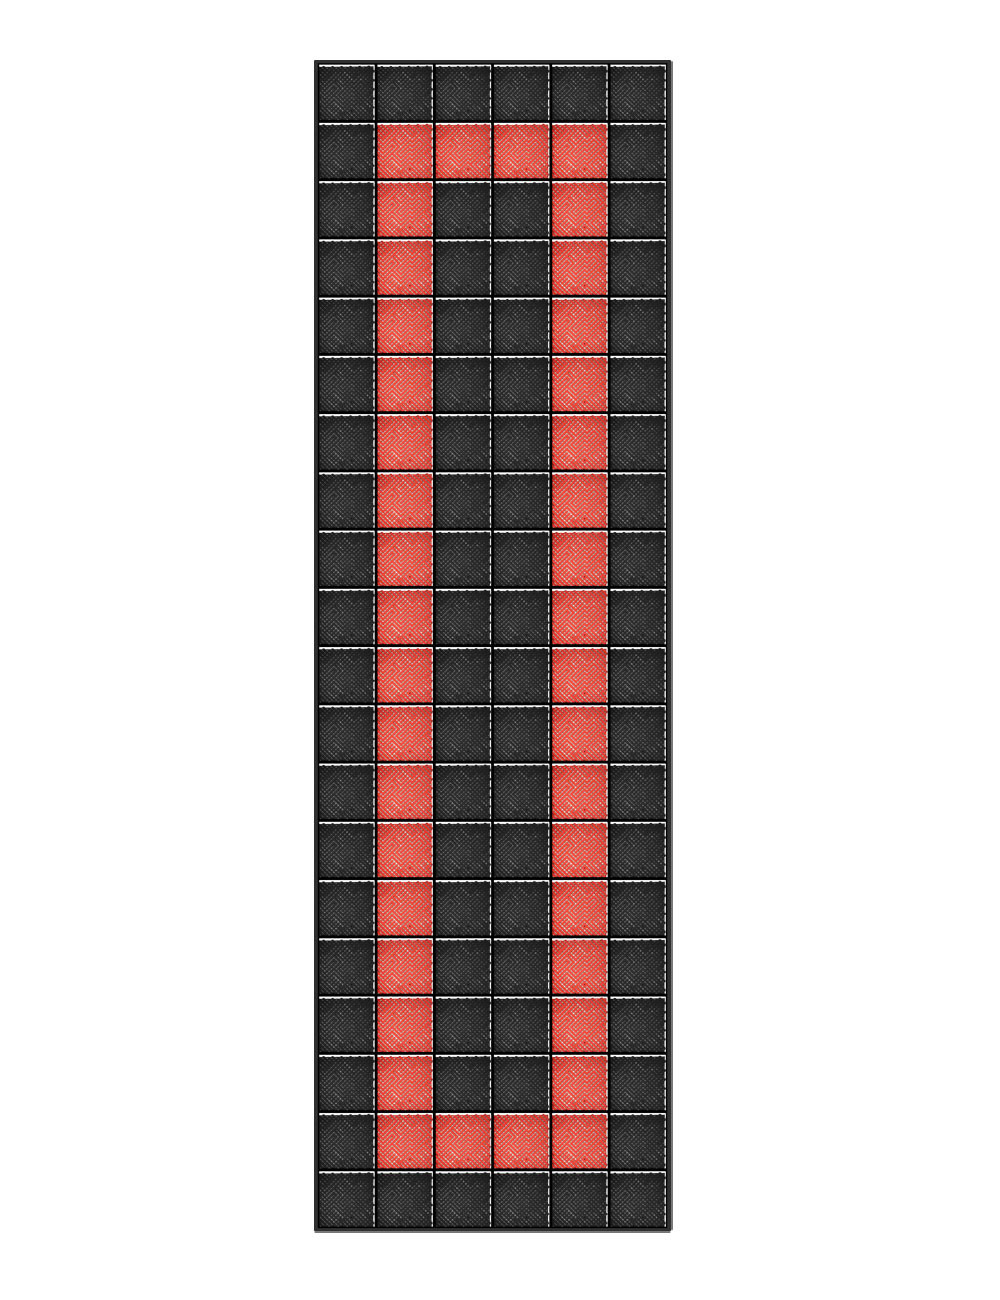 Kit dalles de sol motif racing pour garage - 30m² - 10 m x 3 m - Noir et rouge